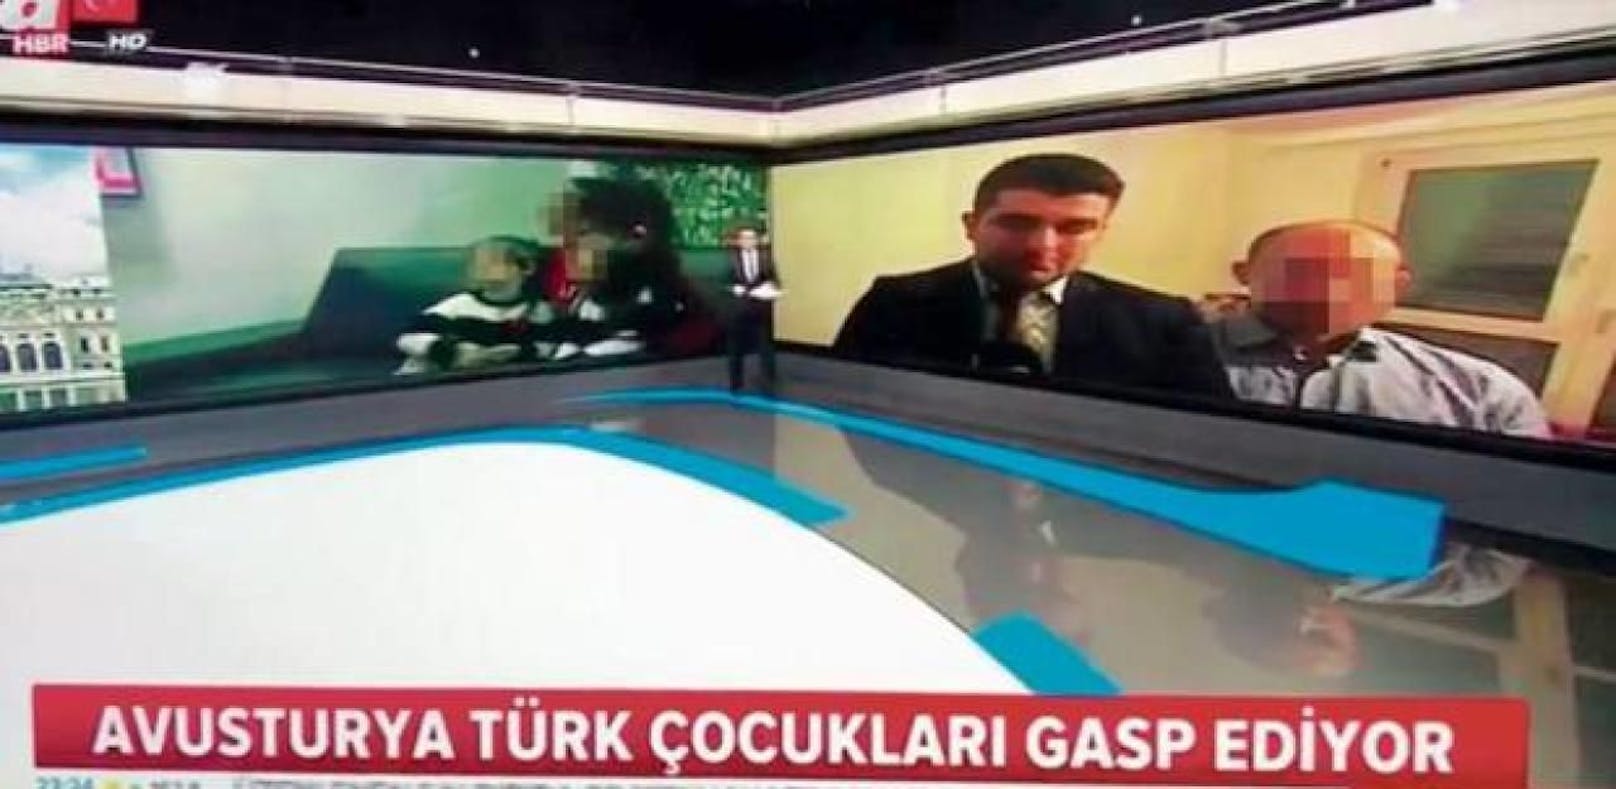 Stimmungsmache: &quot;Österreich raubt türkische Kinder&quot; berichtet der TV-Sender aHaber.